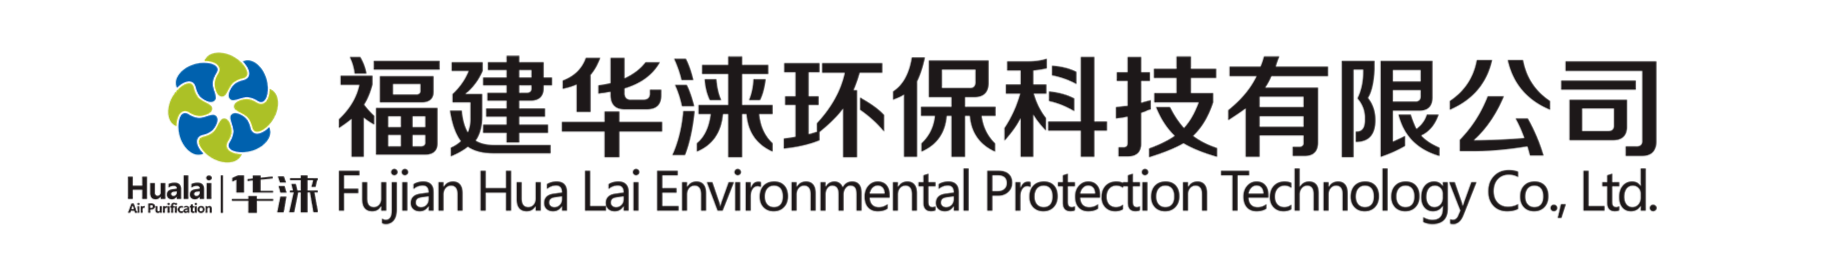 除尘工作台-福建华涞环保科技有限公司